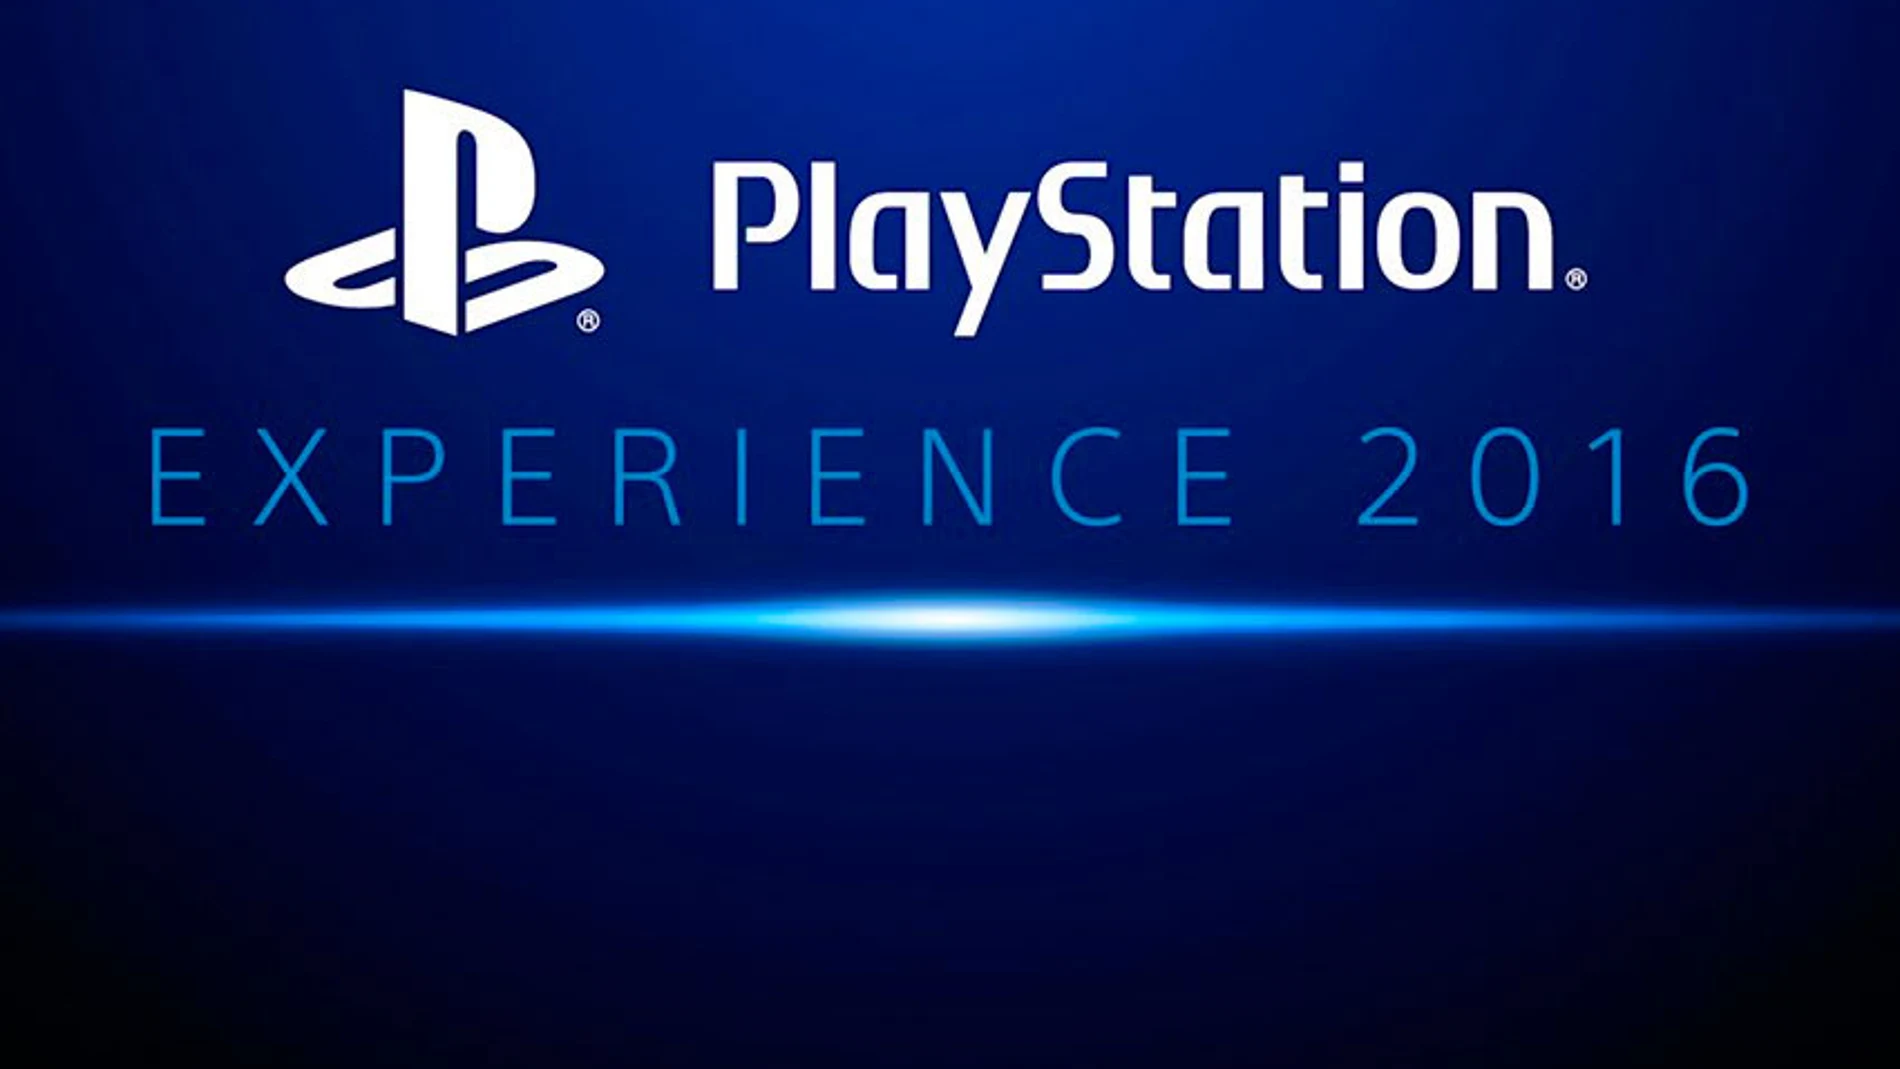 Sony confirma fechas para PlayStation Experience 2016